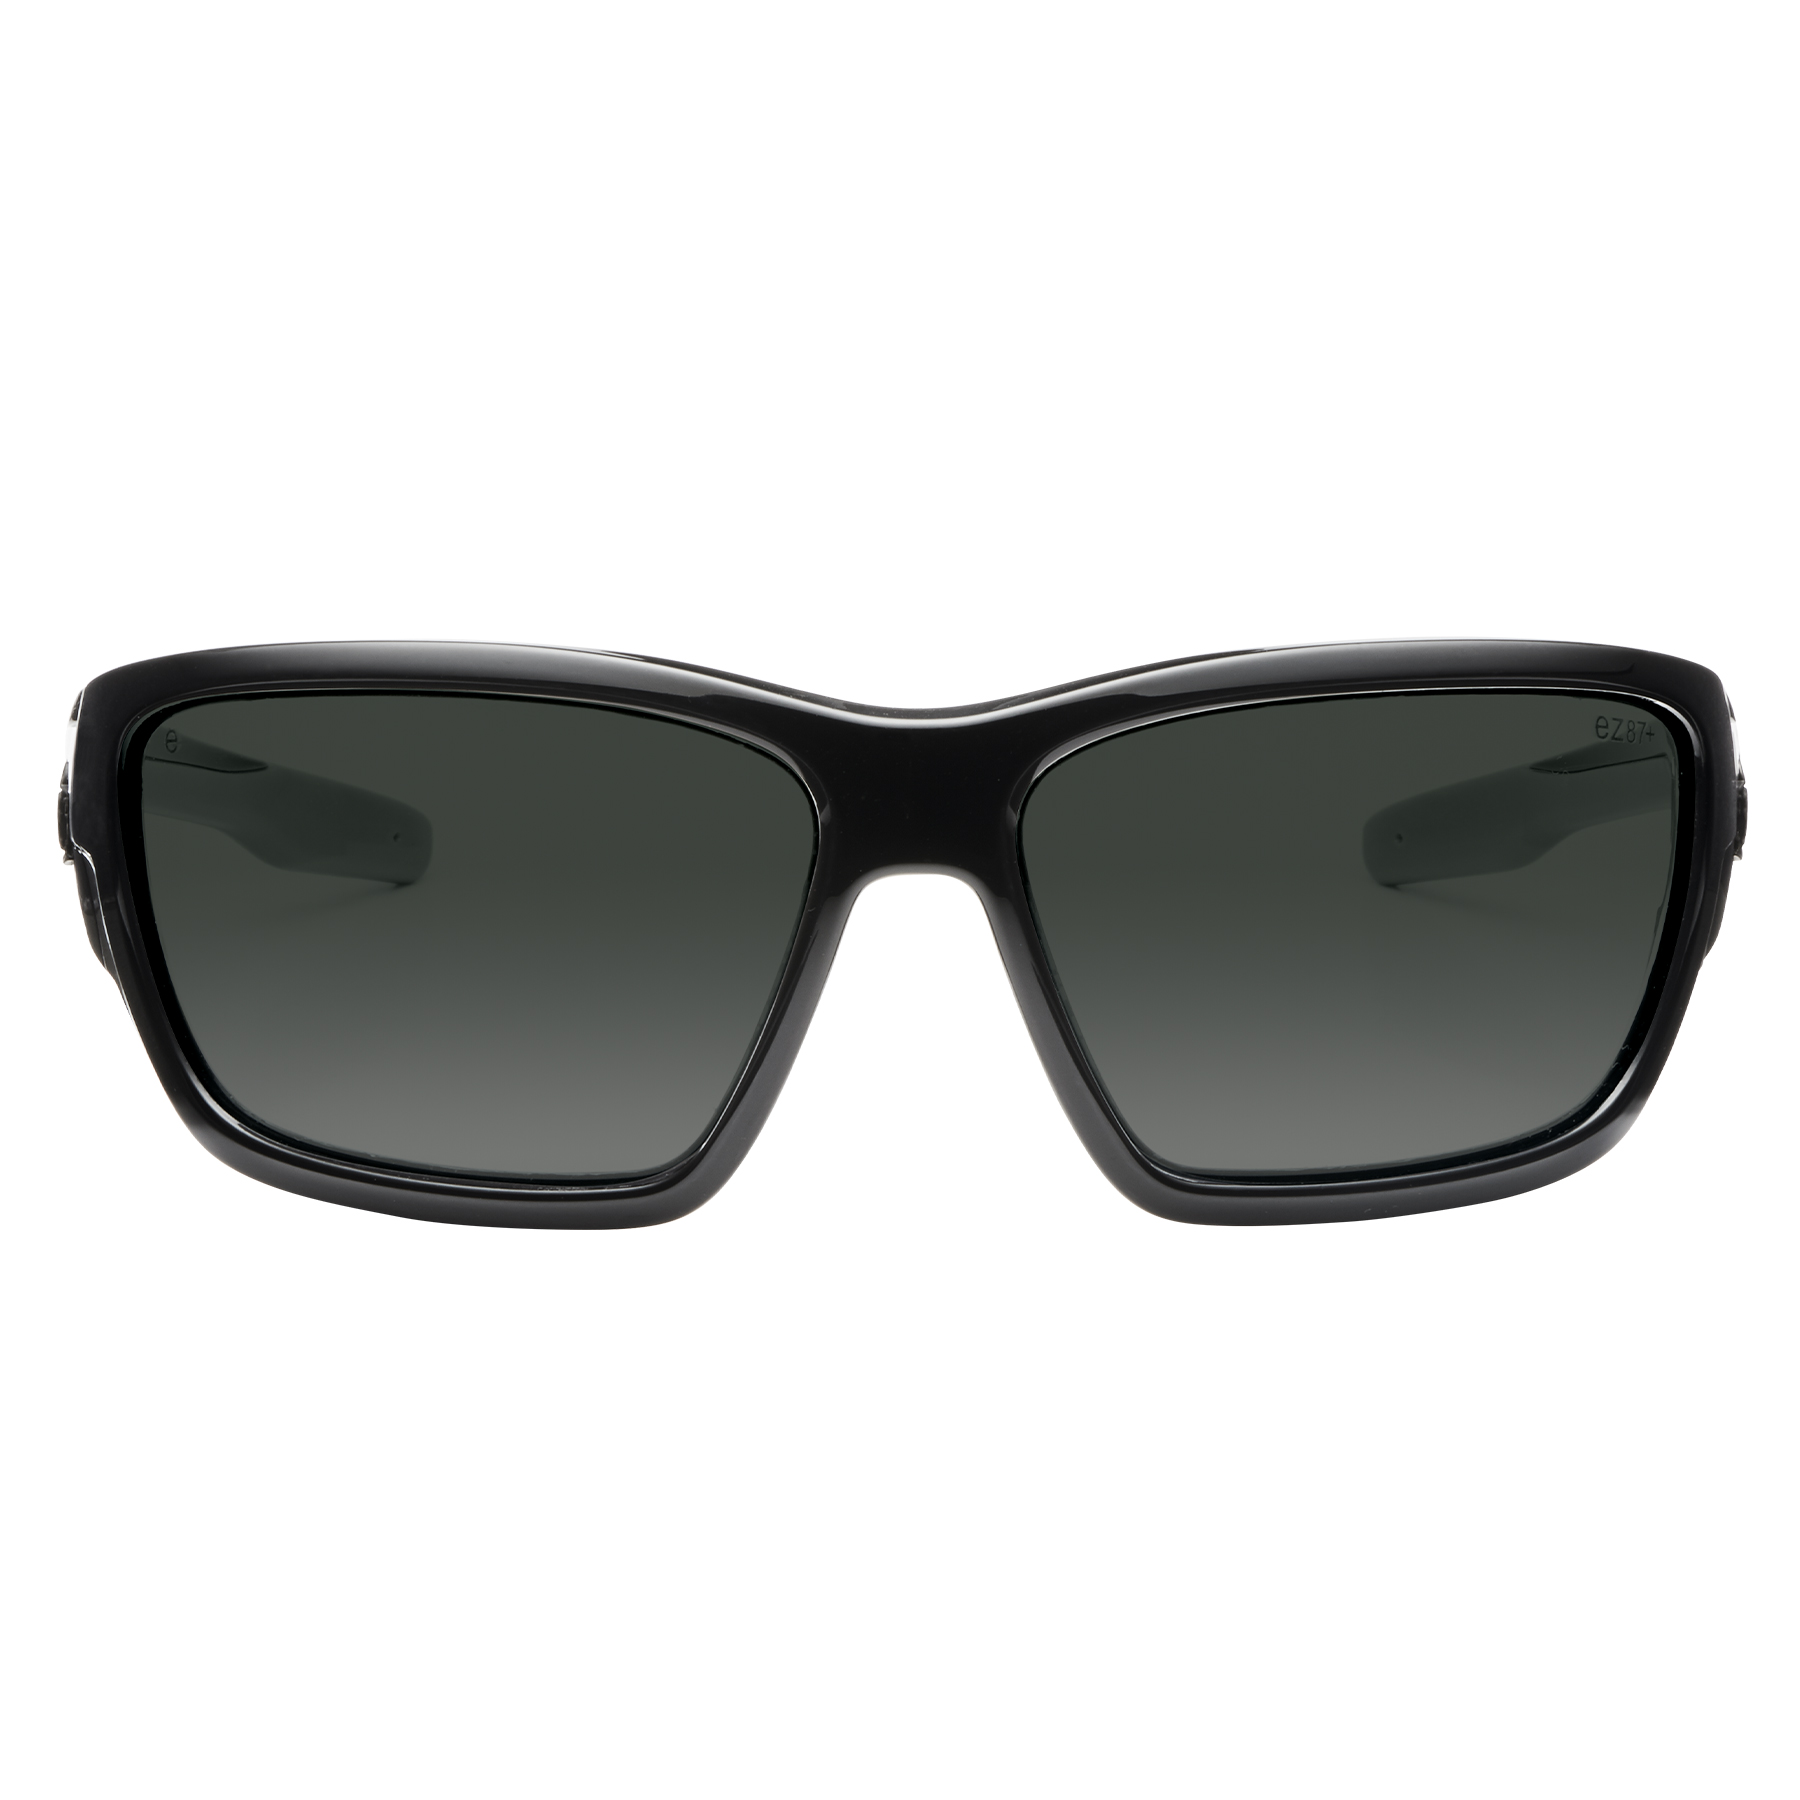 Ergodyne Skullerz Dagr Polarized Safety Sunglasses- Matte Gray